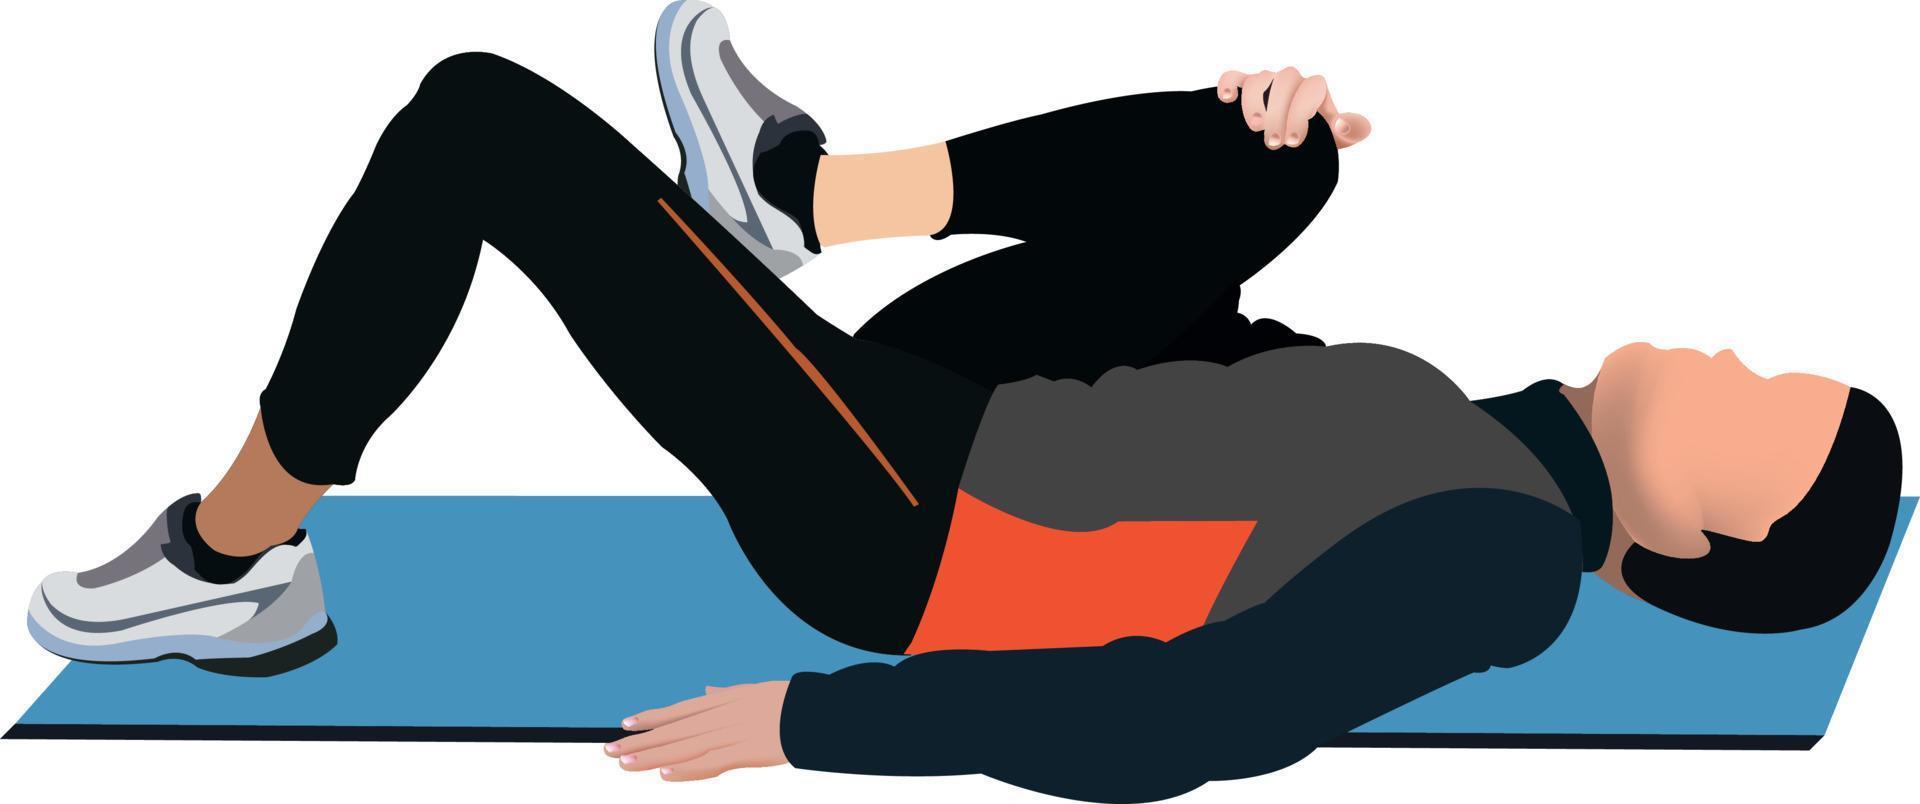 postural gymnastikövning. illustrationen visar en man på en matta som utför en stretchövning. vektor